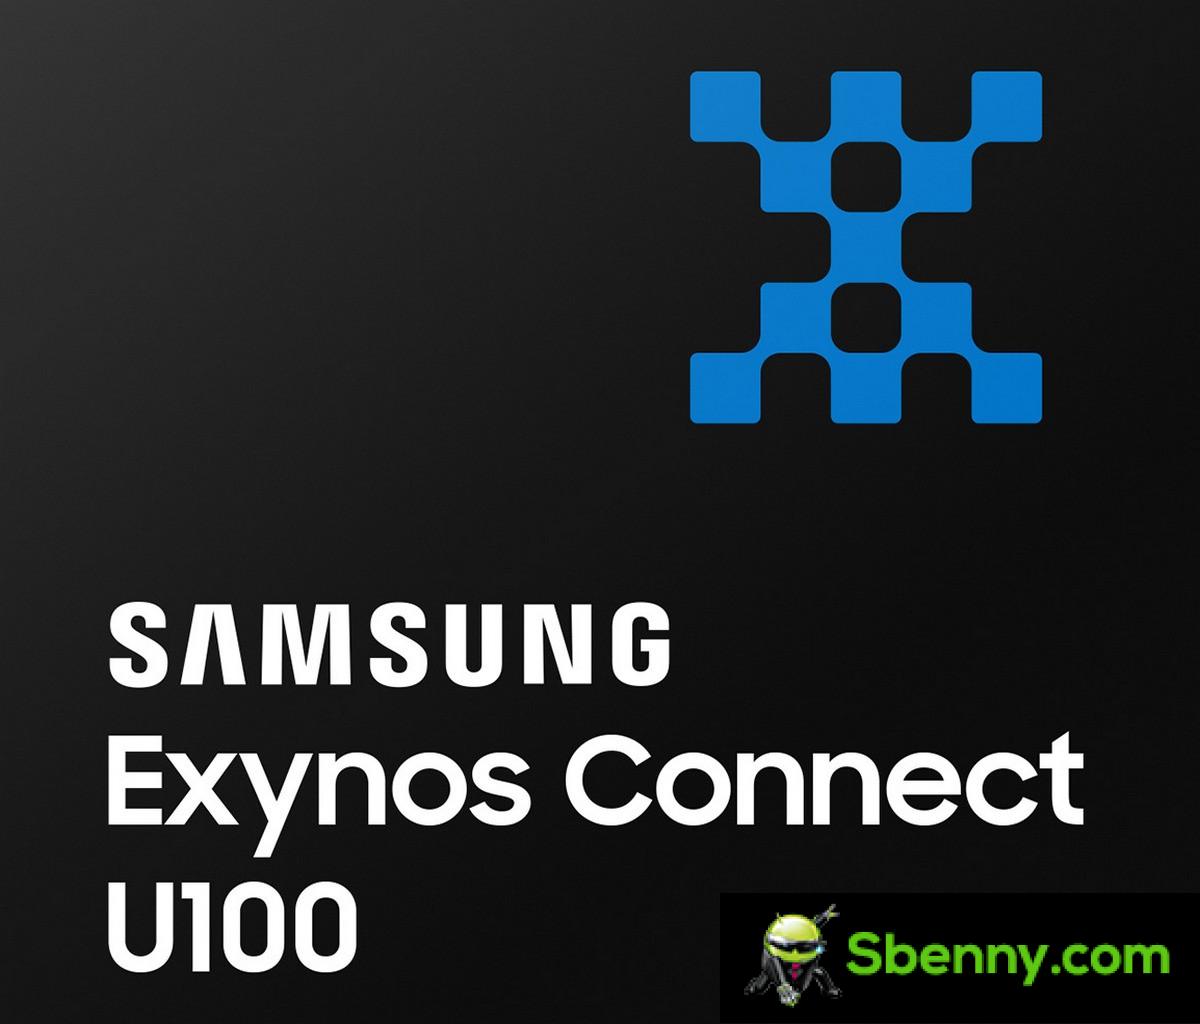 Samsung onthult Exynos Connect U100, zijn ultrabreedband-chipset